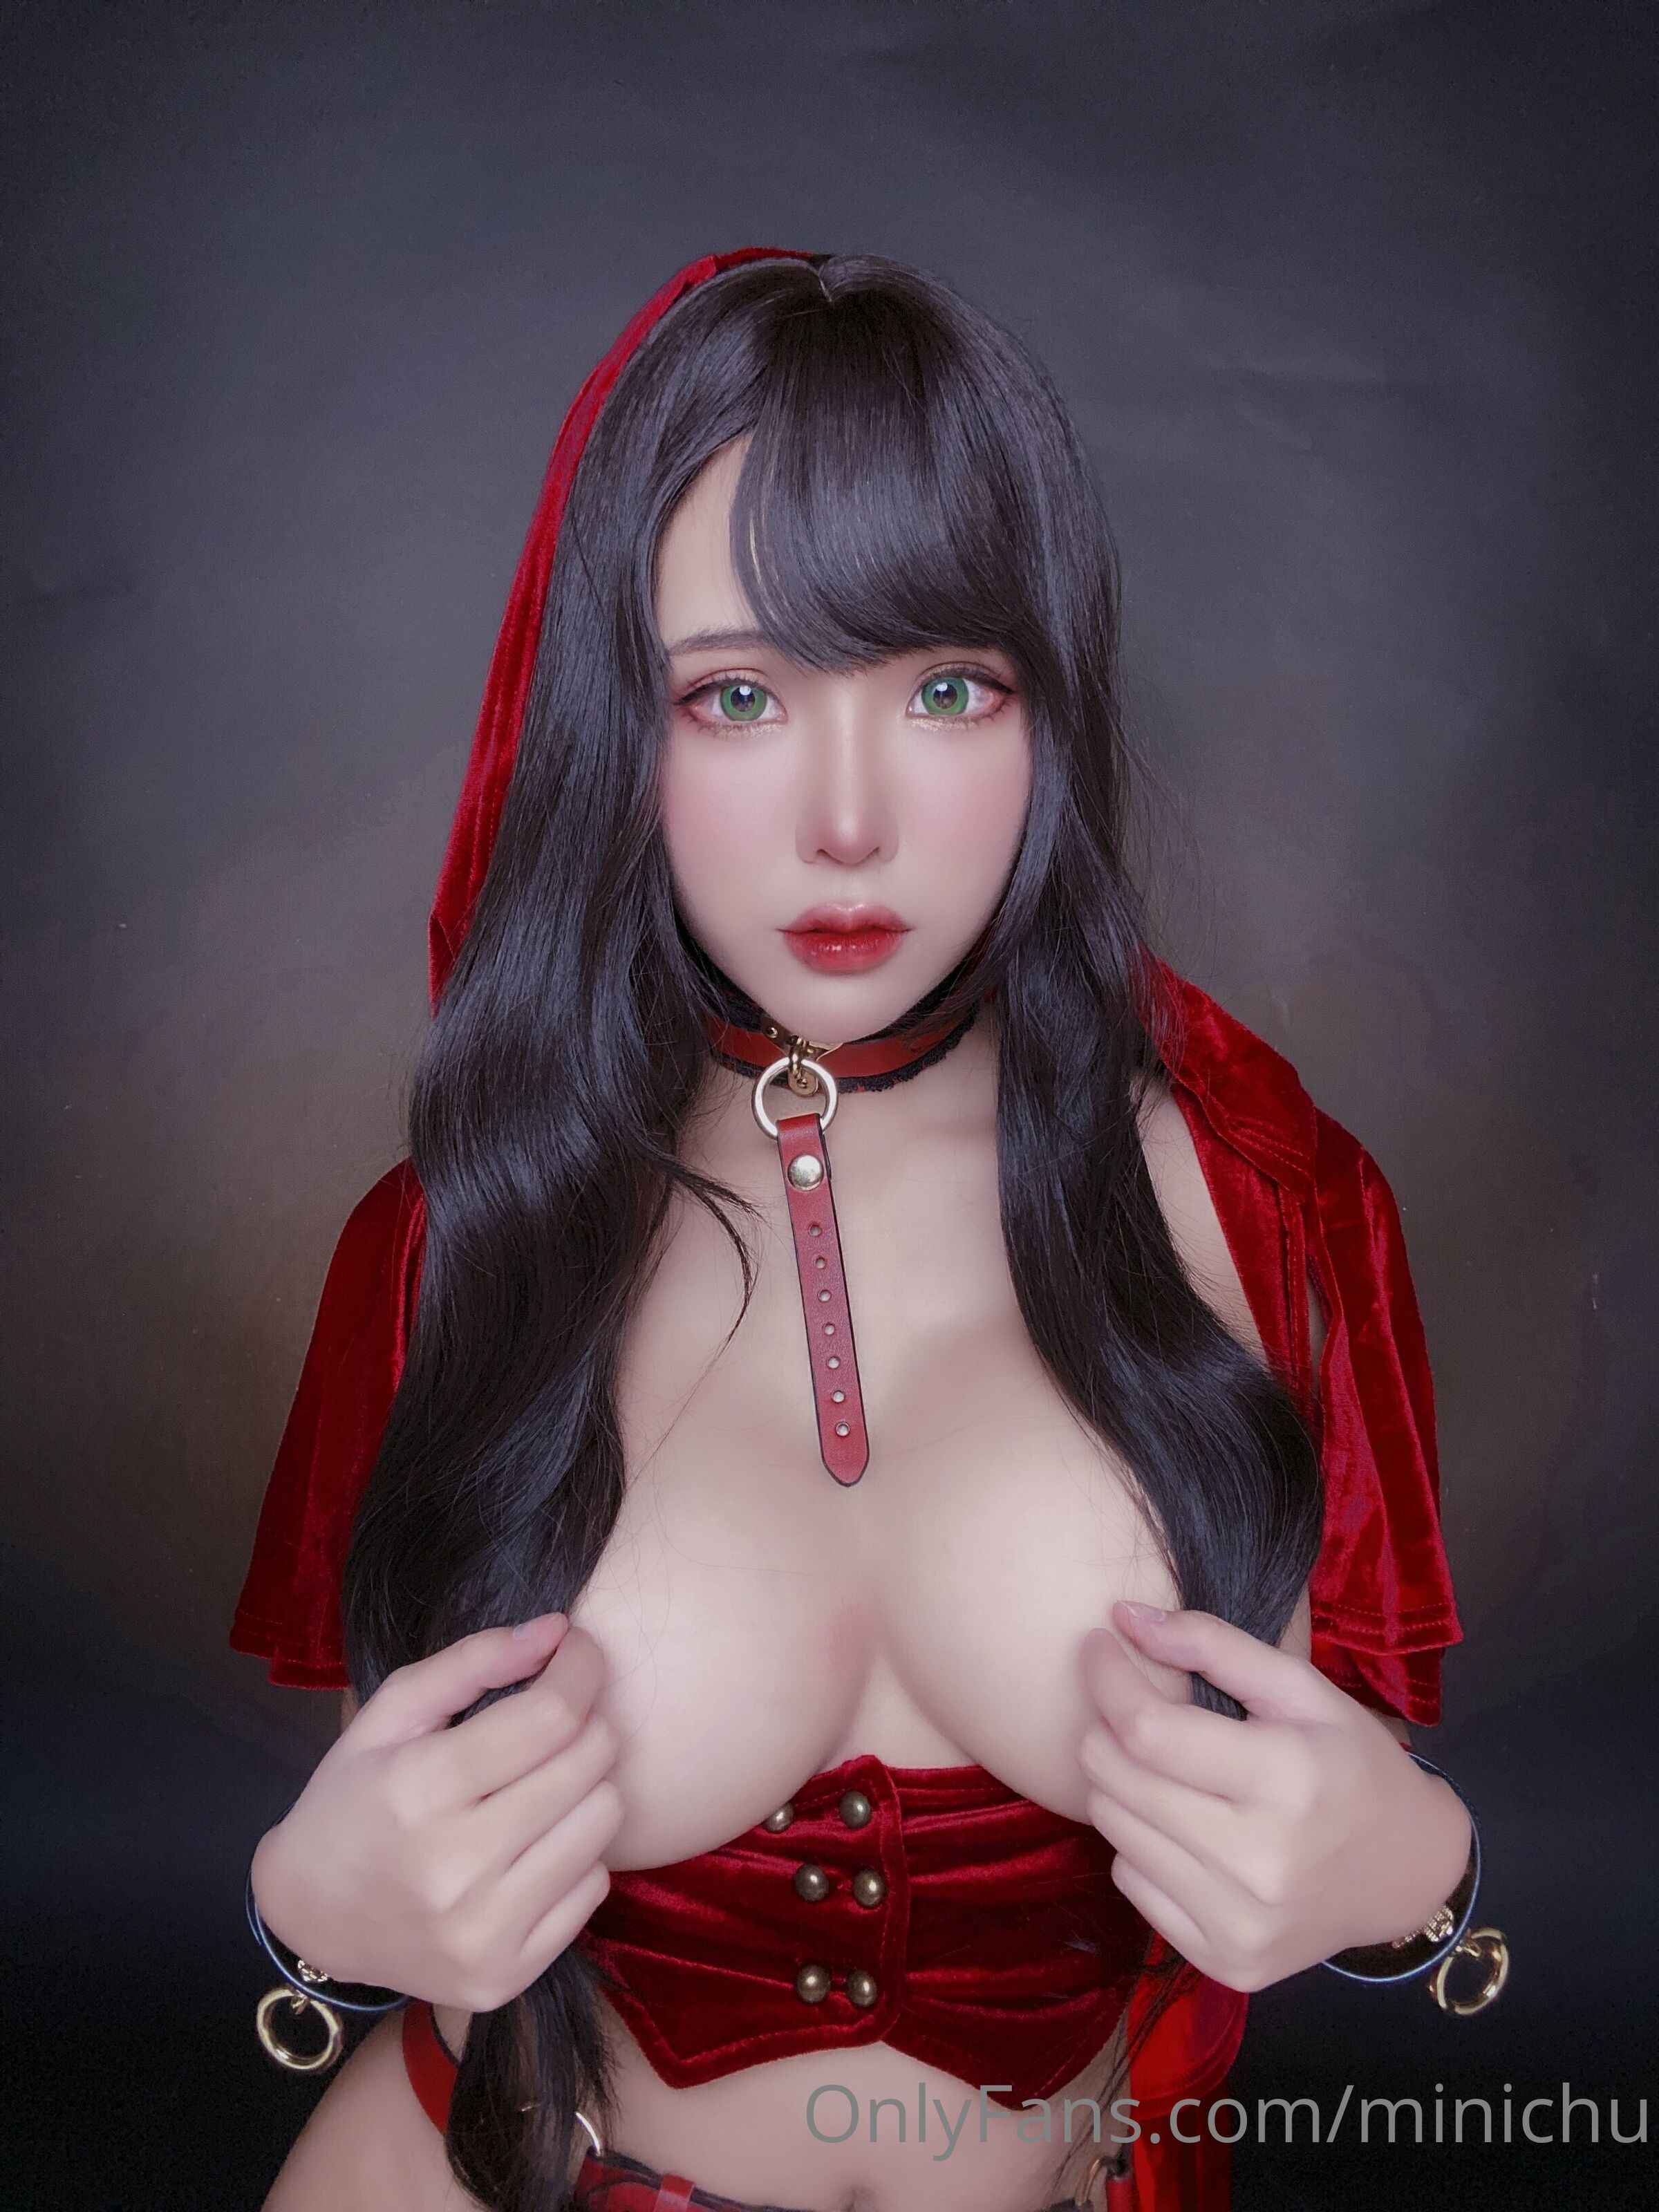 Minichu - Red Riding Hood试读4P